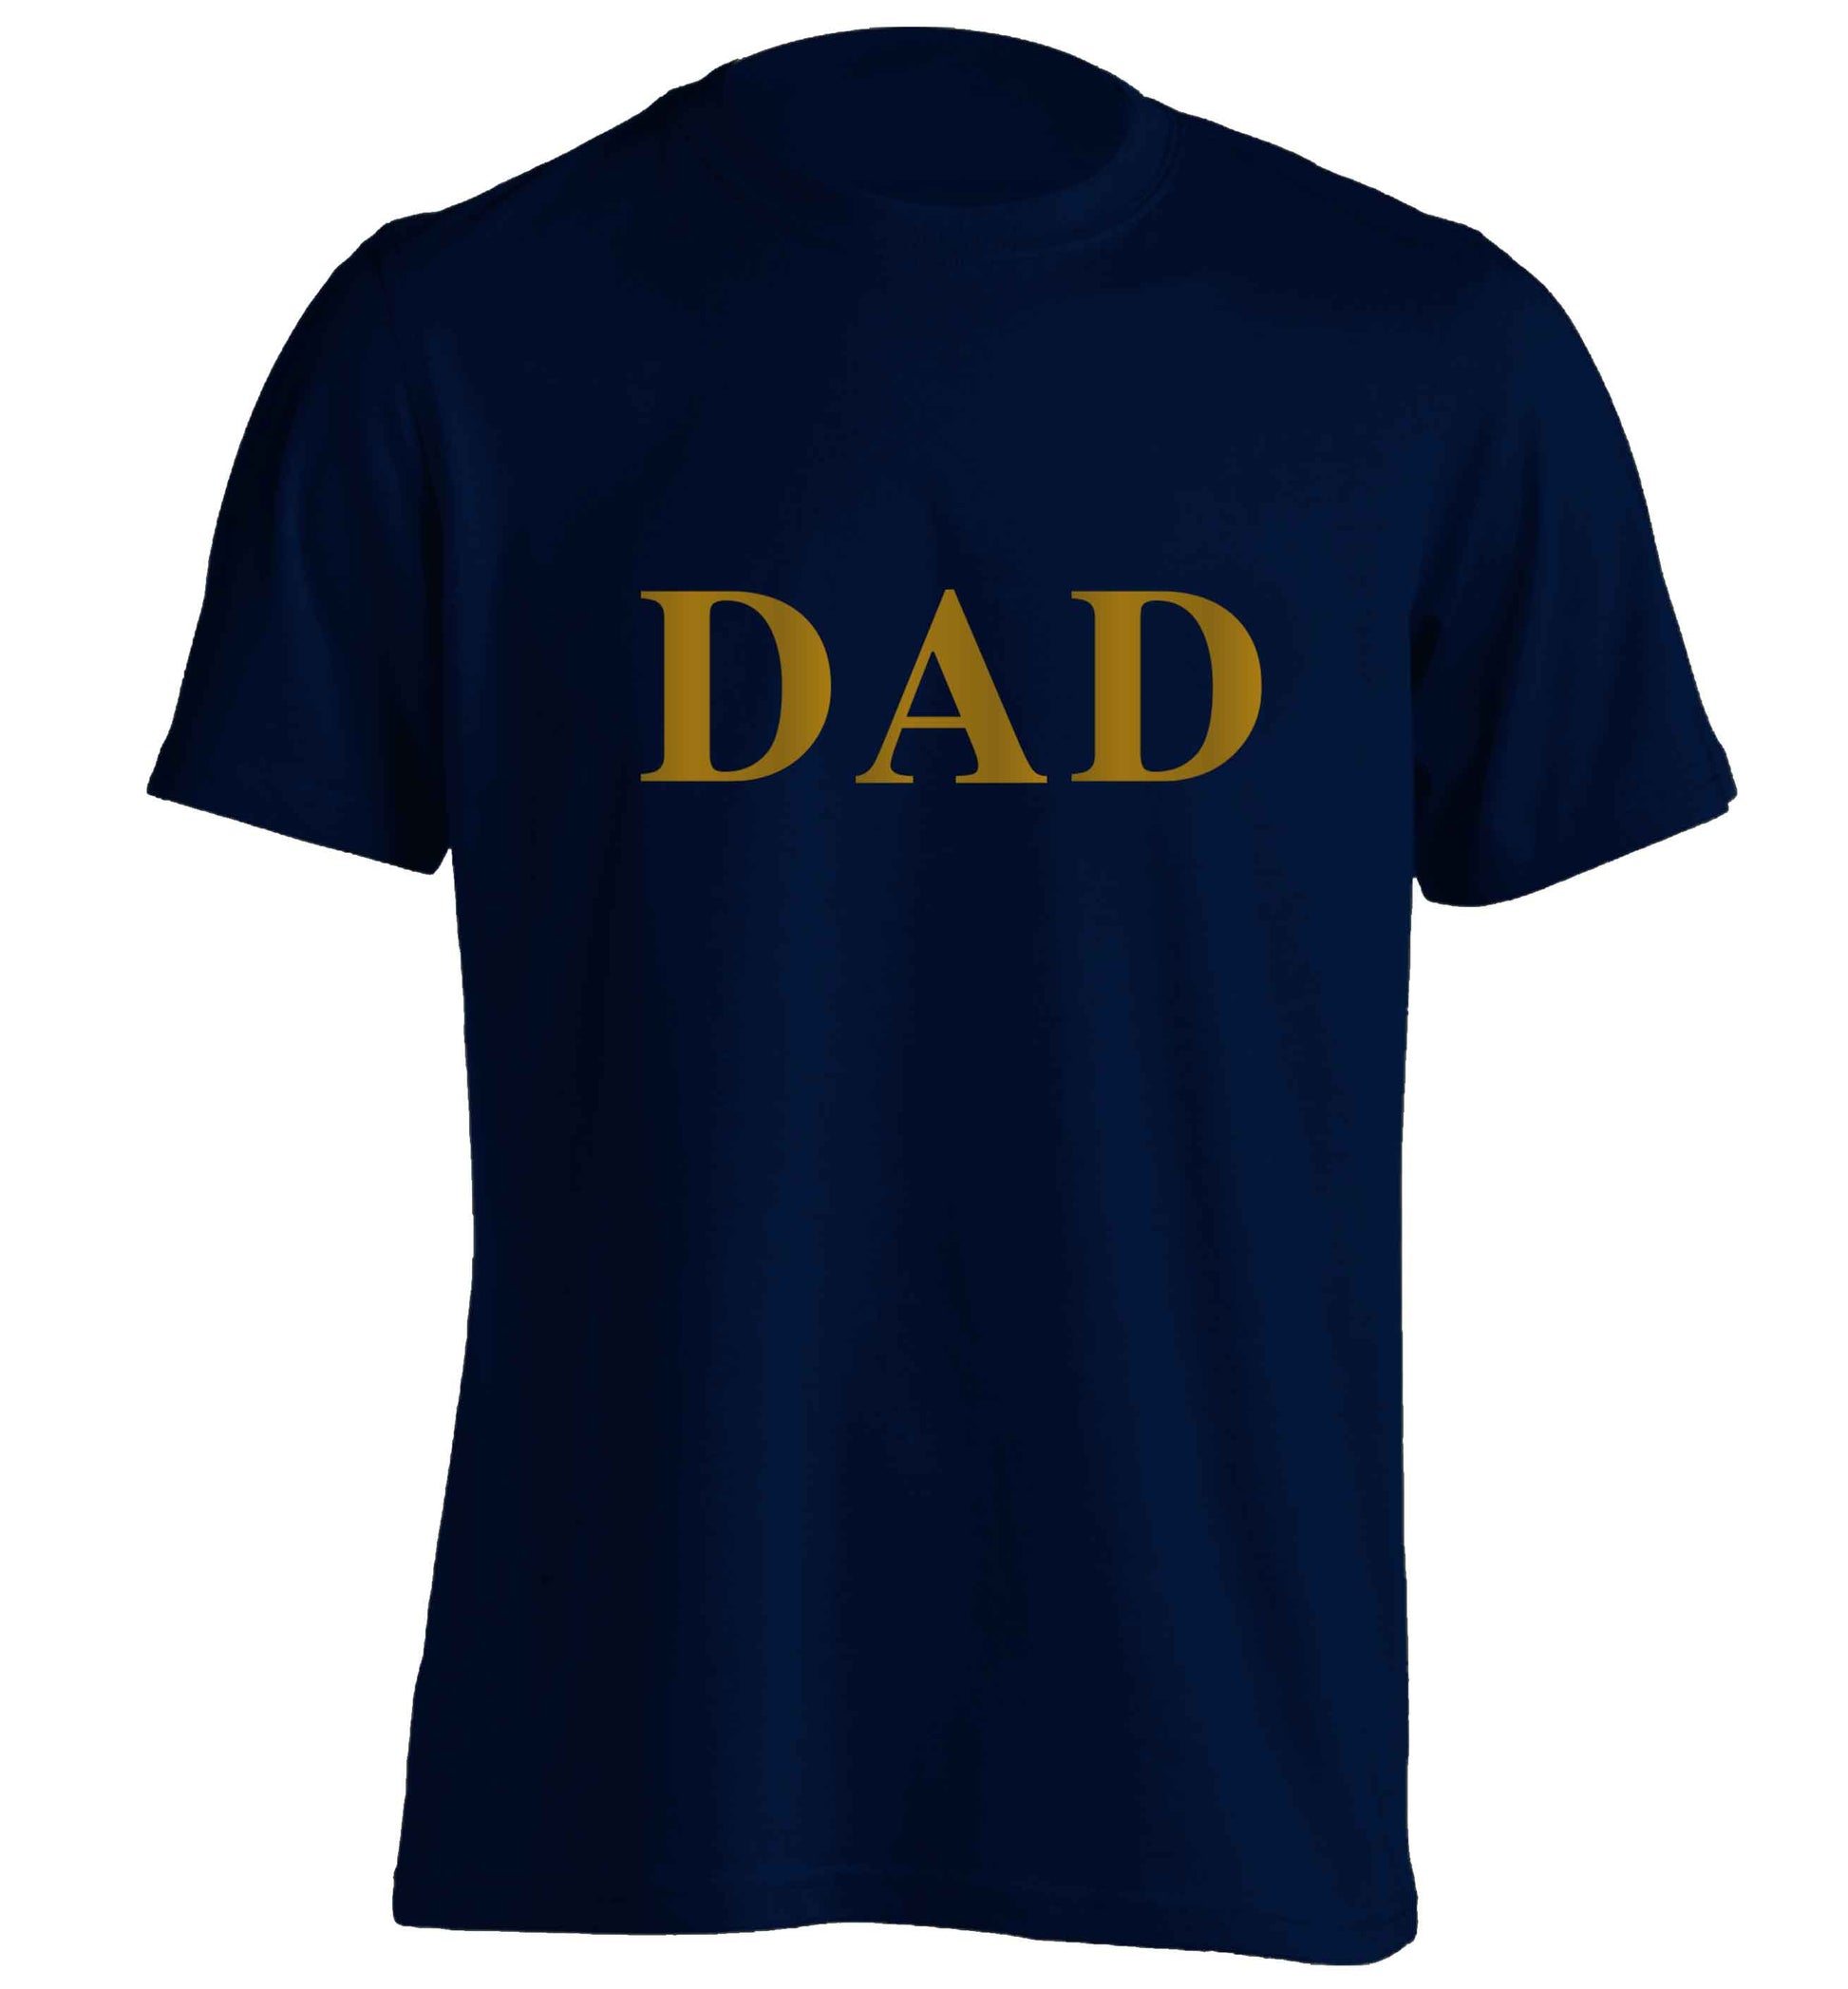 Dad adults unisex navy Tshirt 2XL